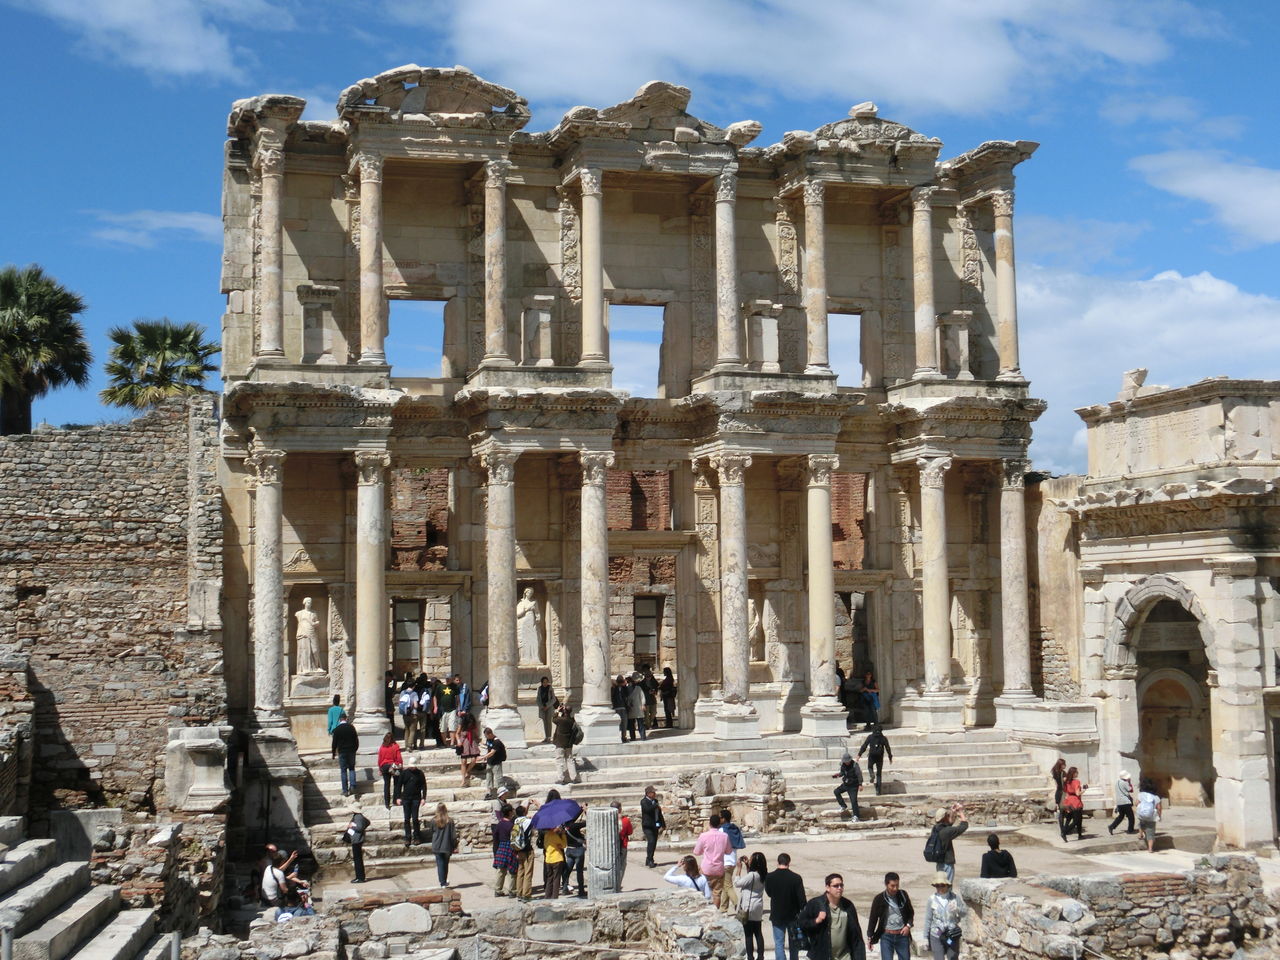 トルコ旅行記11 エフェソス遺跡 臆病者の世界見聞録